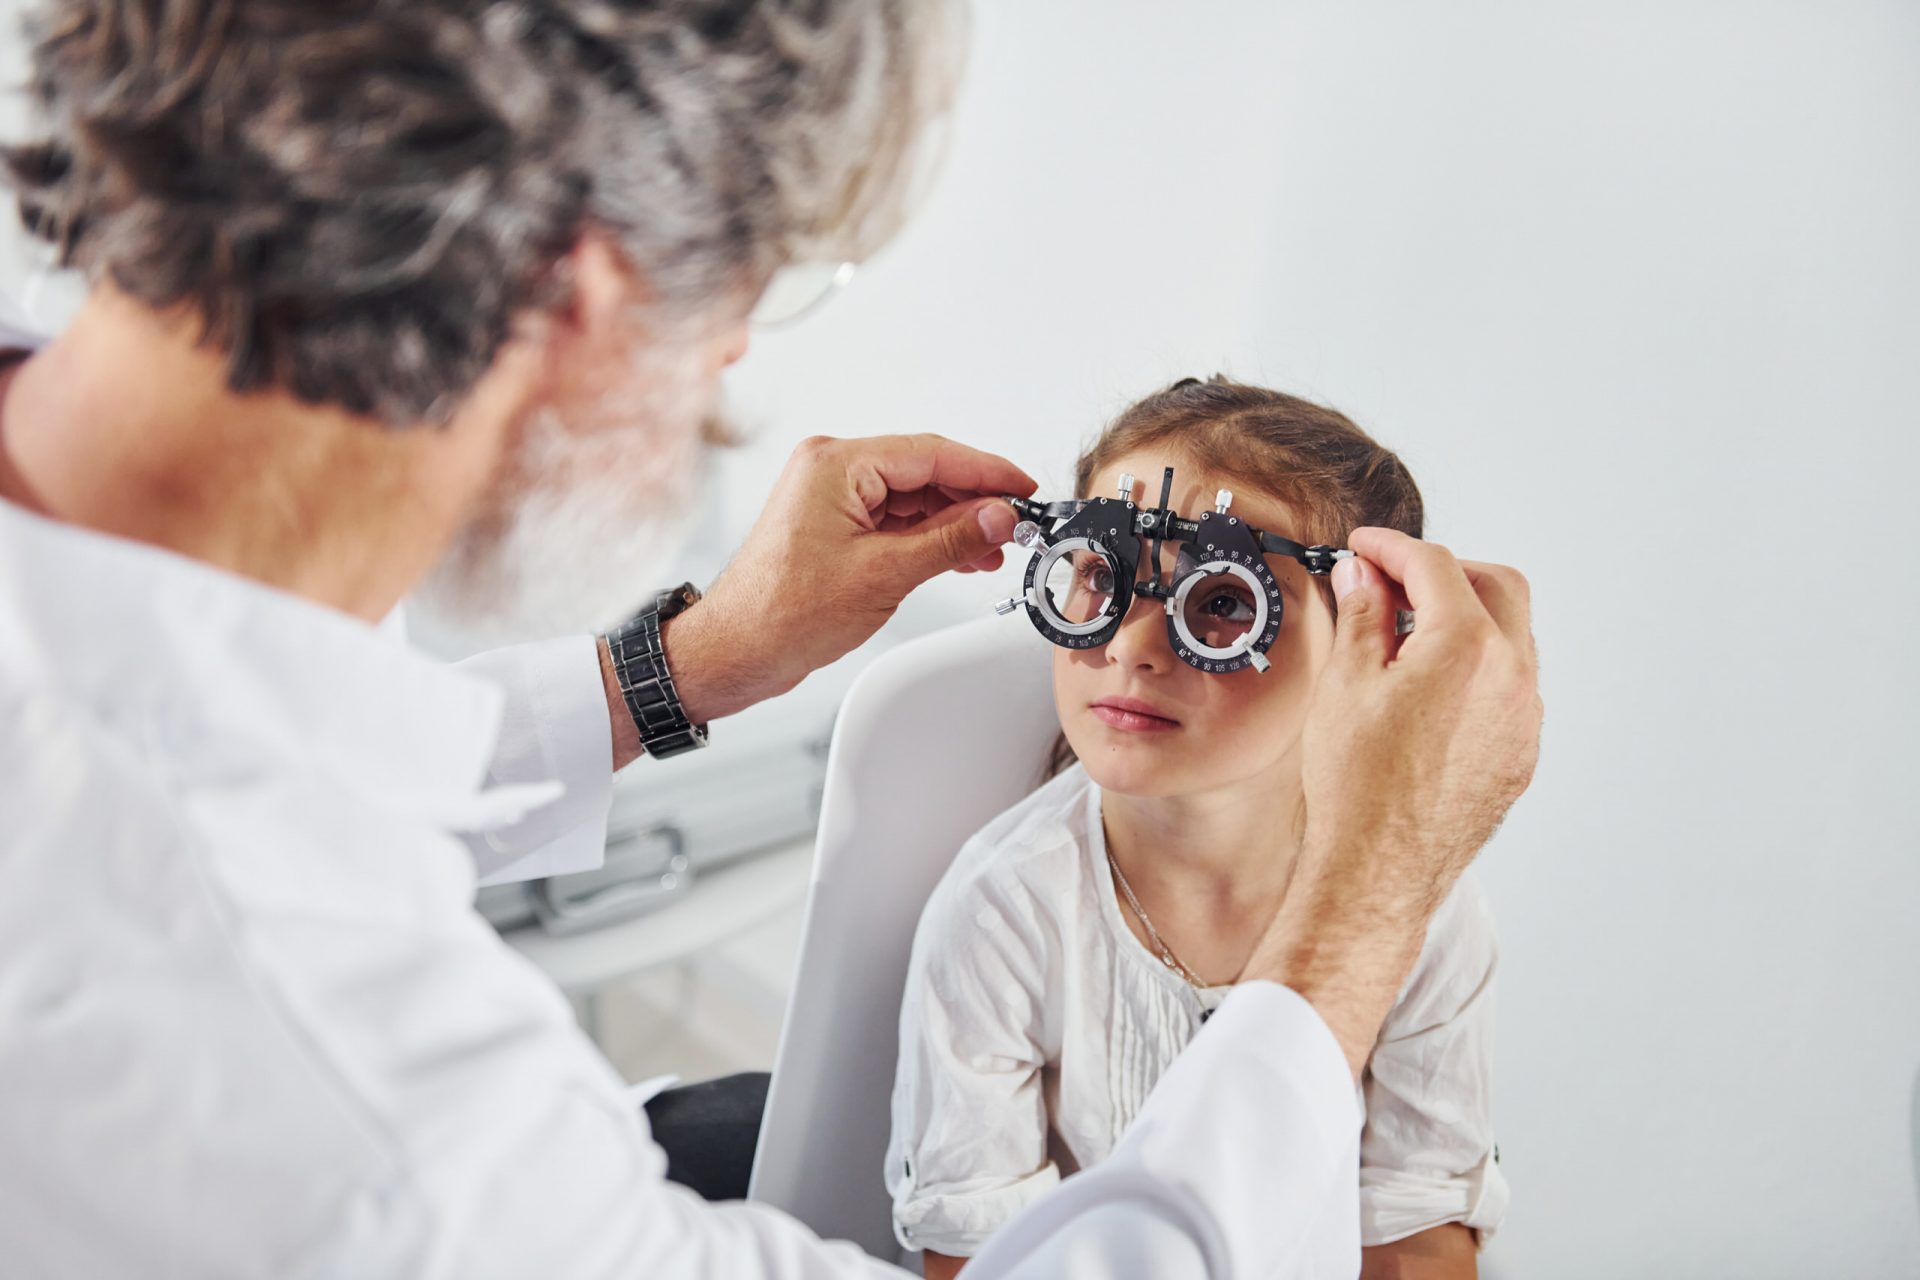 Messung der Sehschärfe von einem Augenarzt bei einem jungen Mädchen